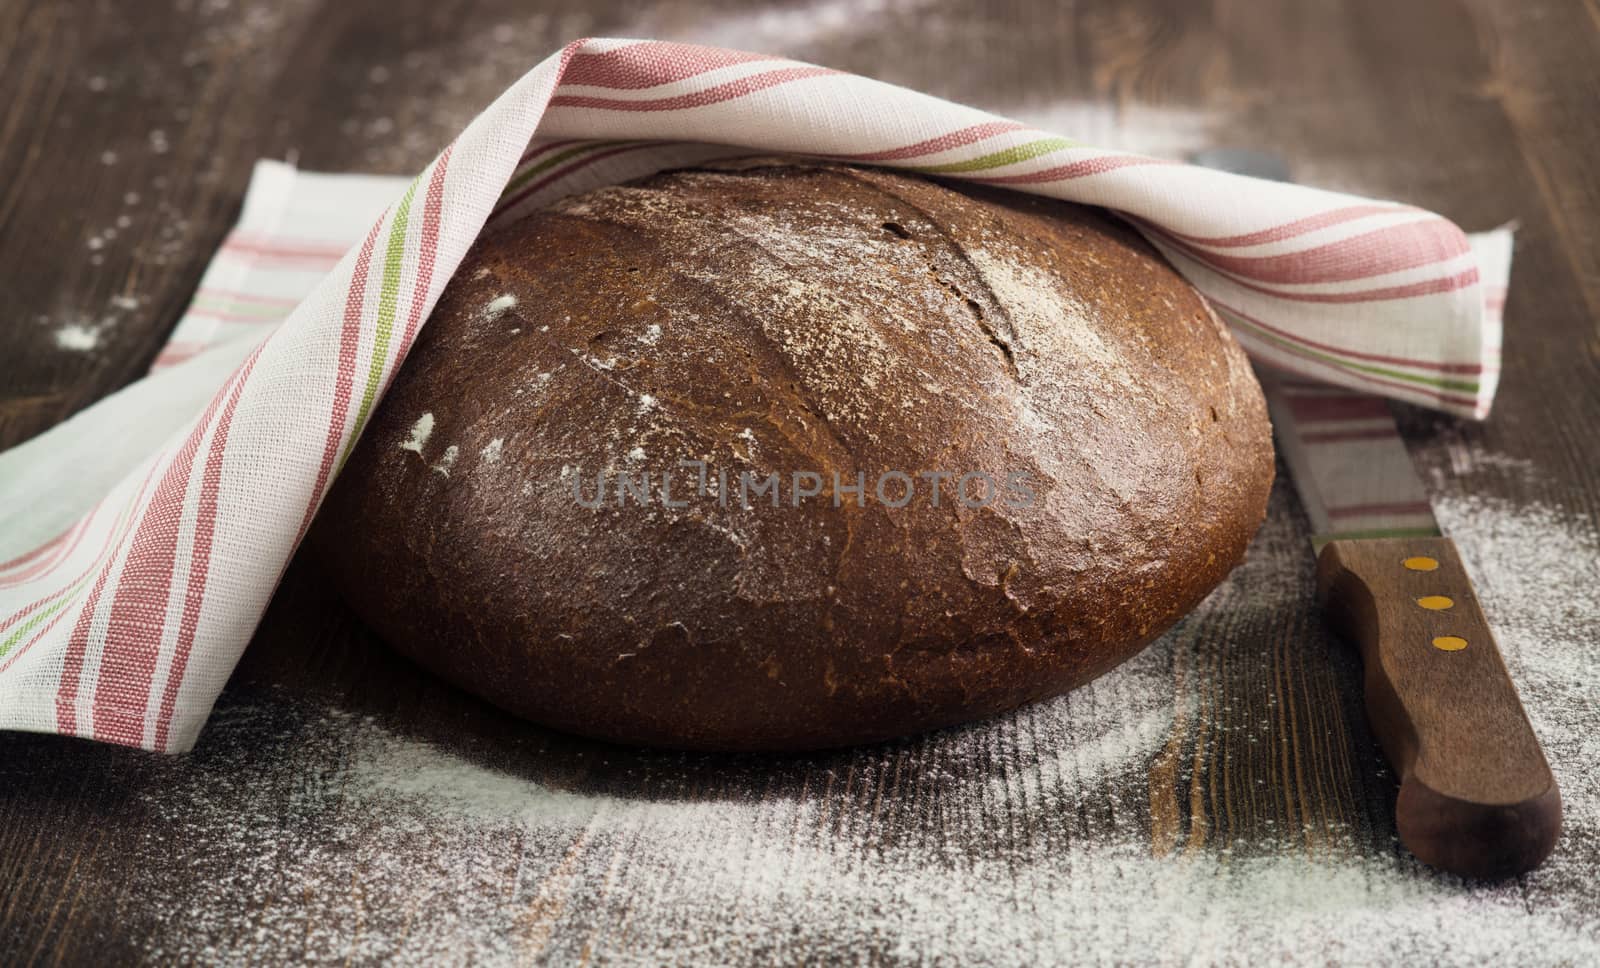 Rye bread under towel on wooden table by kzen